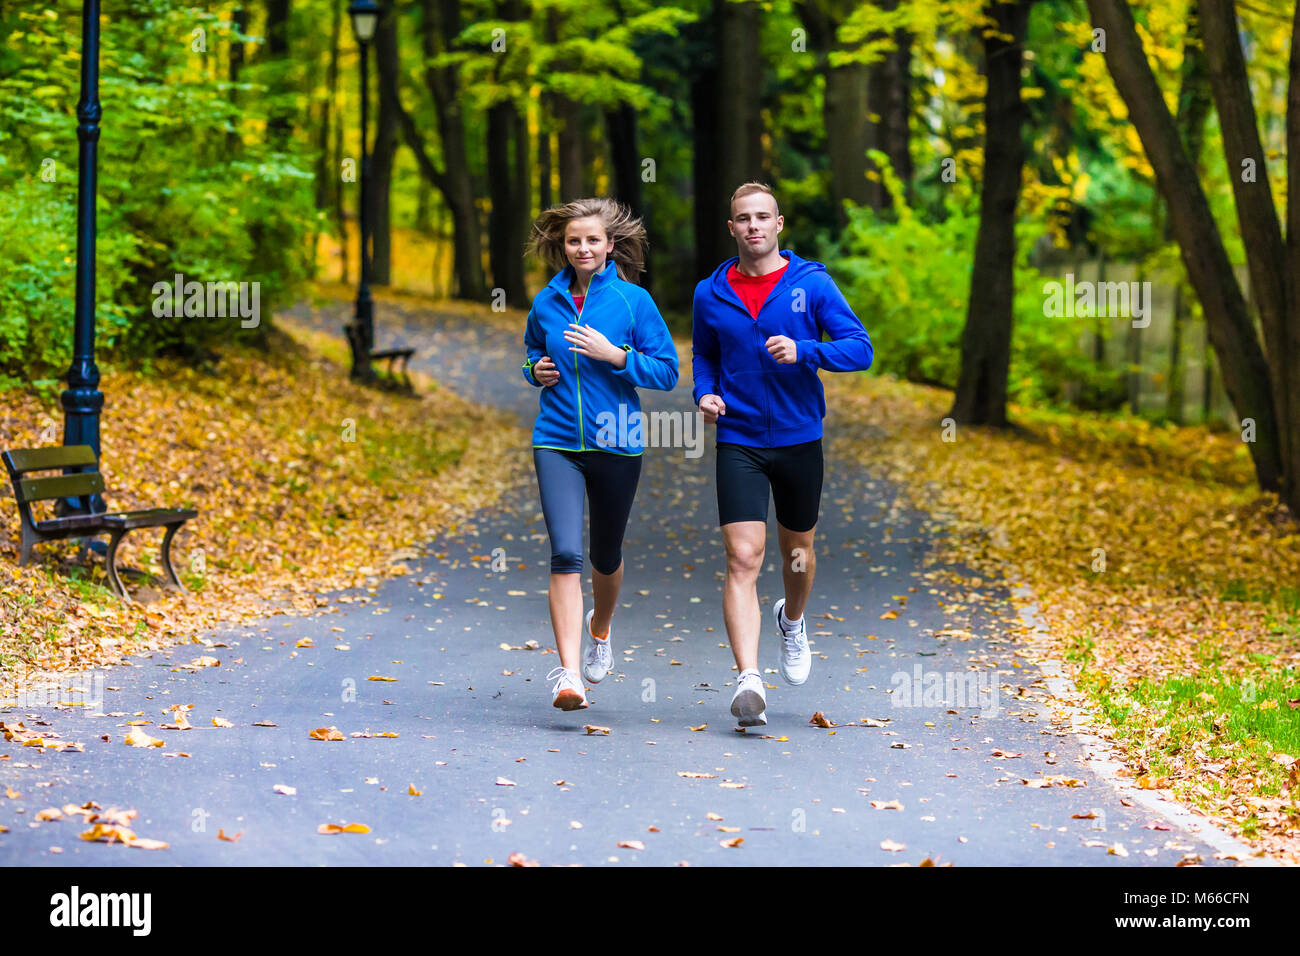 Fotos de Corriendo mujer corriendo en el parque - Imagen de